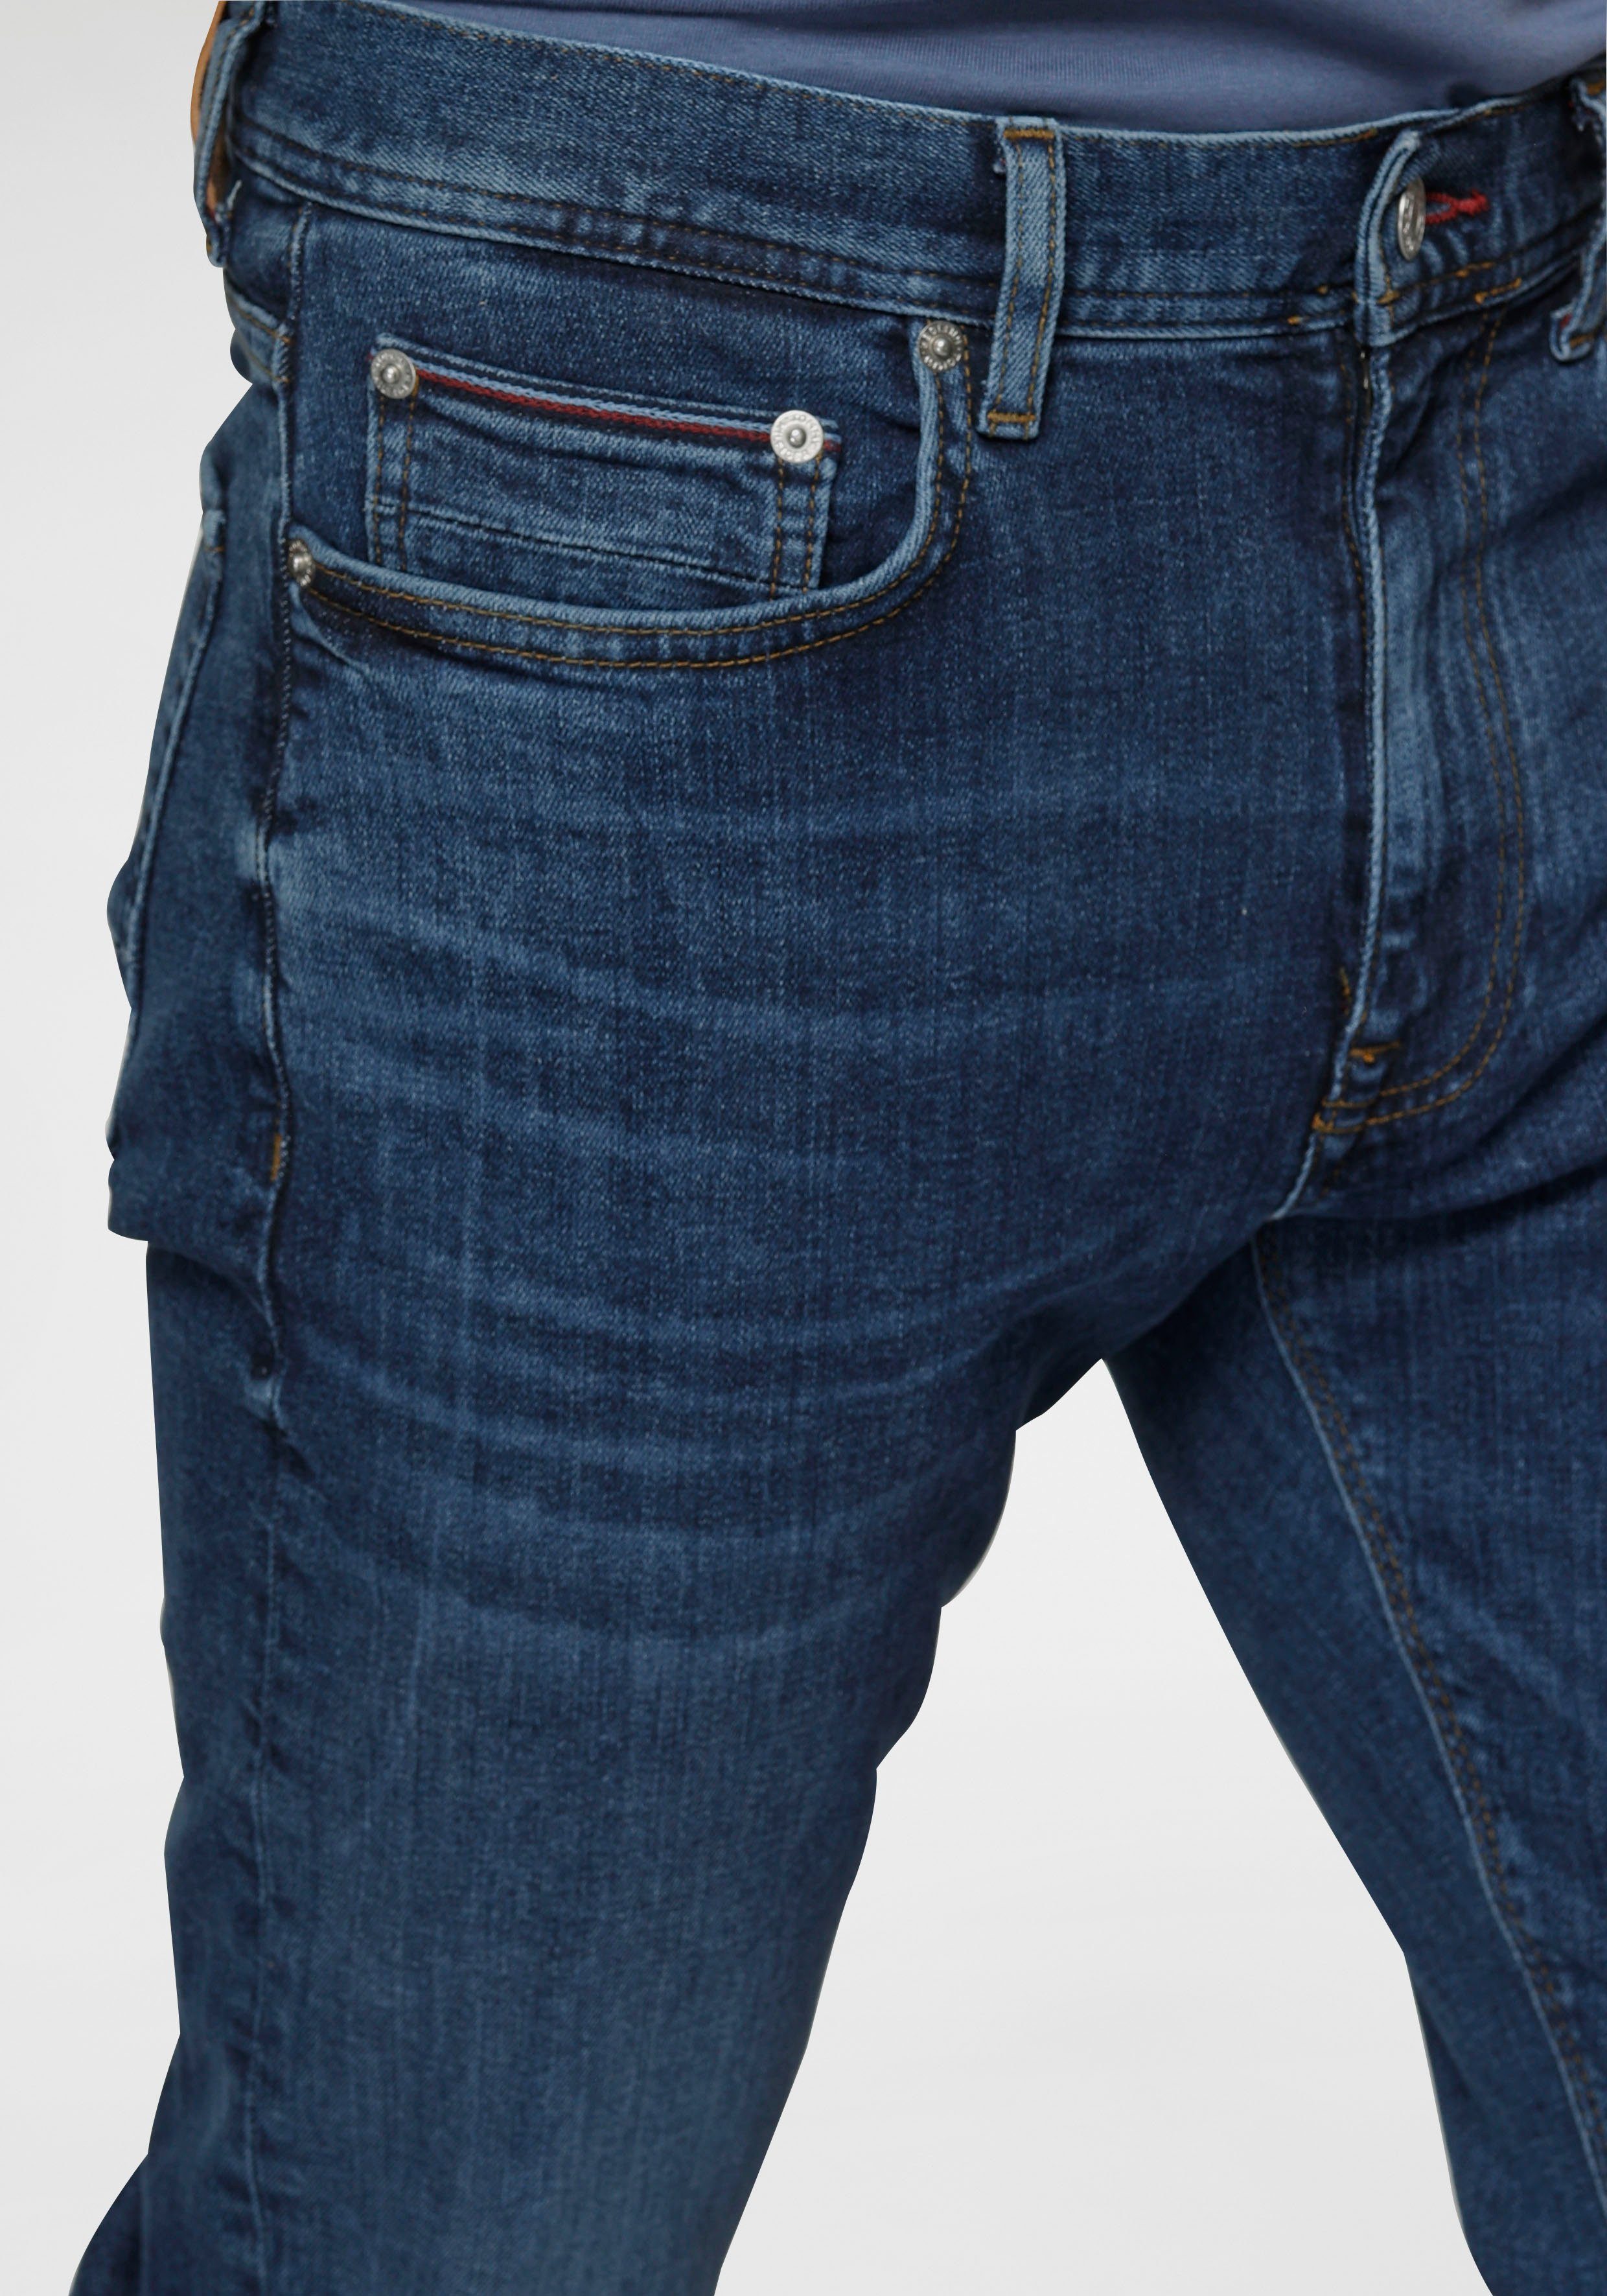 Tommy Hilfiger Slim-fit-Jeans extra Bleecker Baumwoll-Denim indigo oregon mit Stretch, bequem